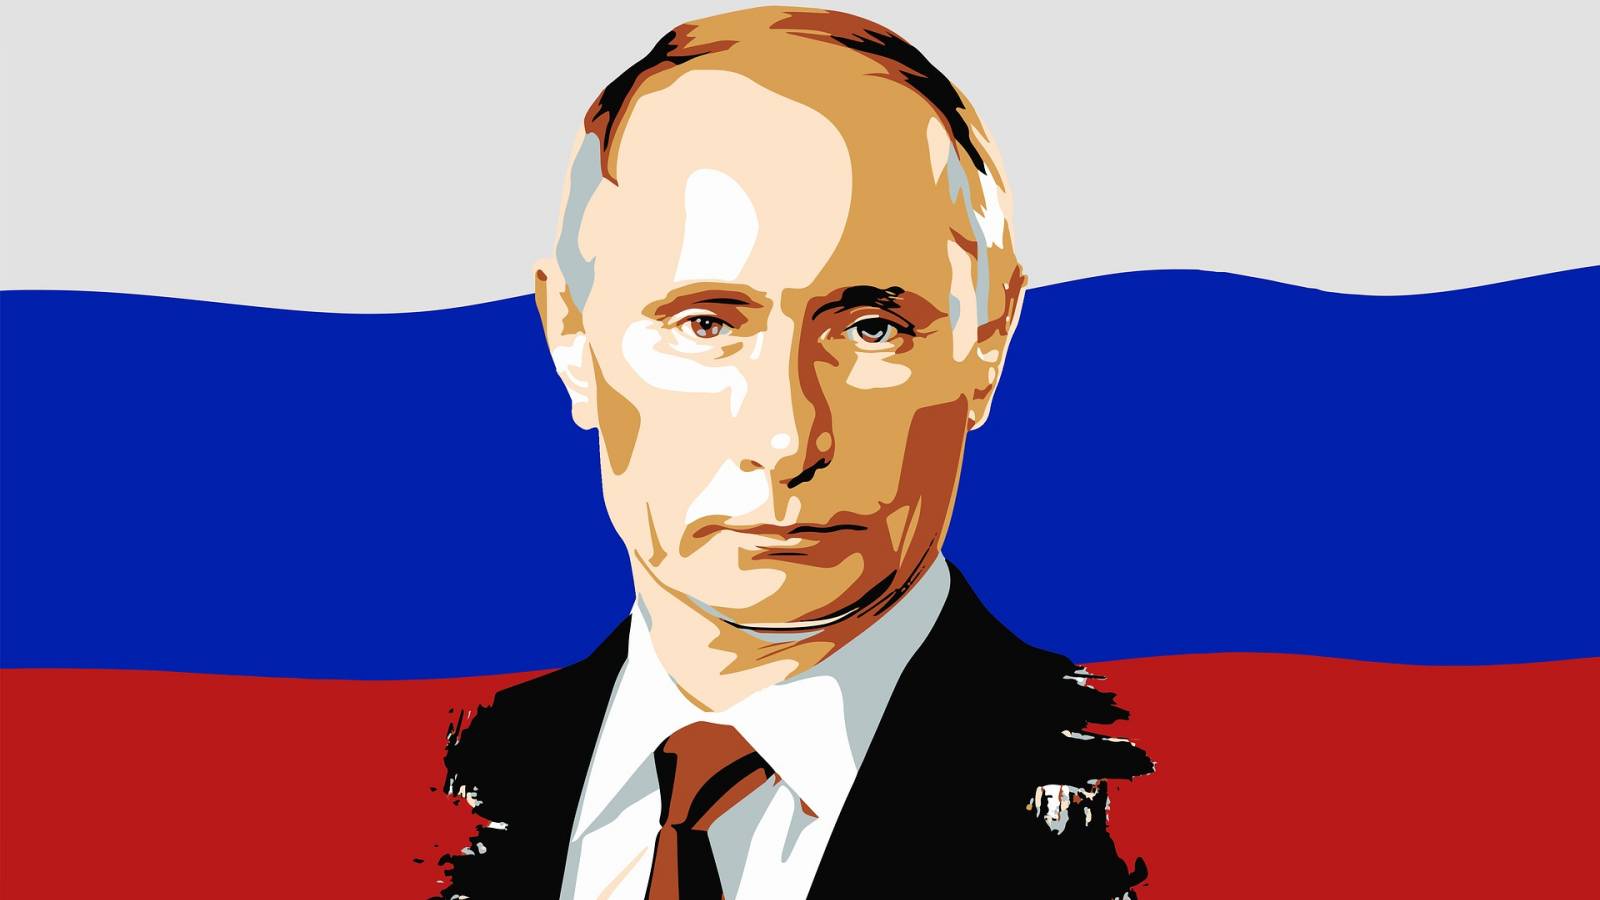 Vladimir Putin isi Dezvaluie Ingrijorarile privind Grupul de Mercenari Wagner